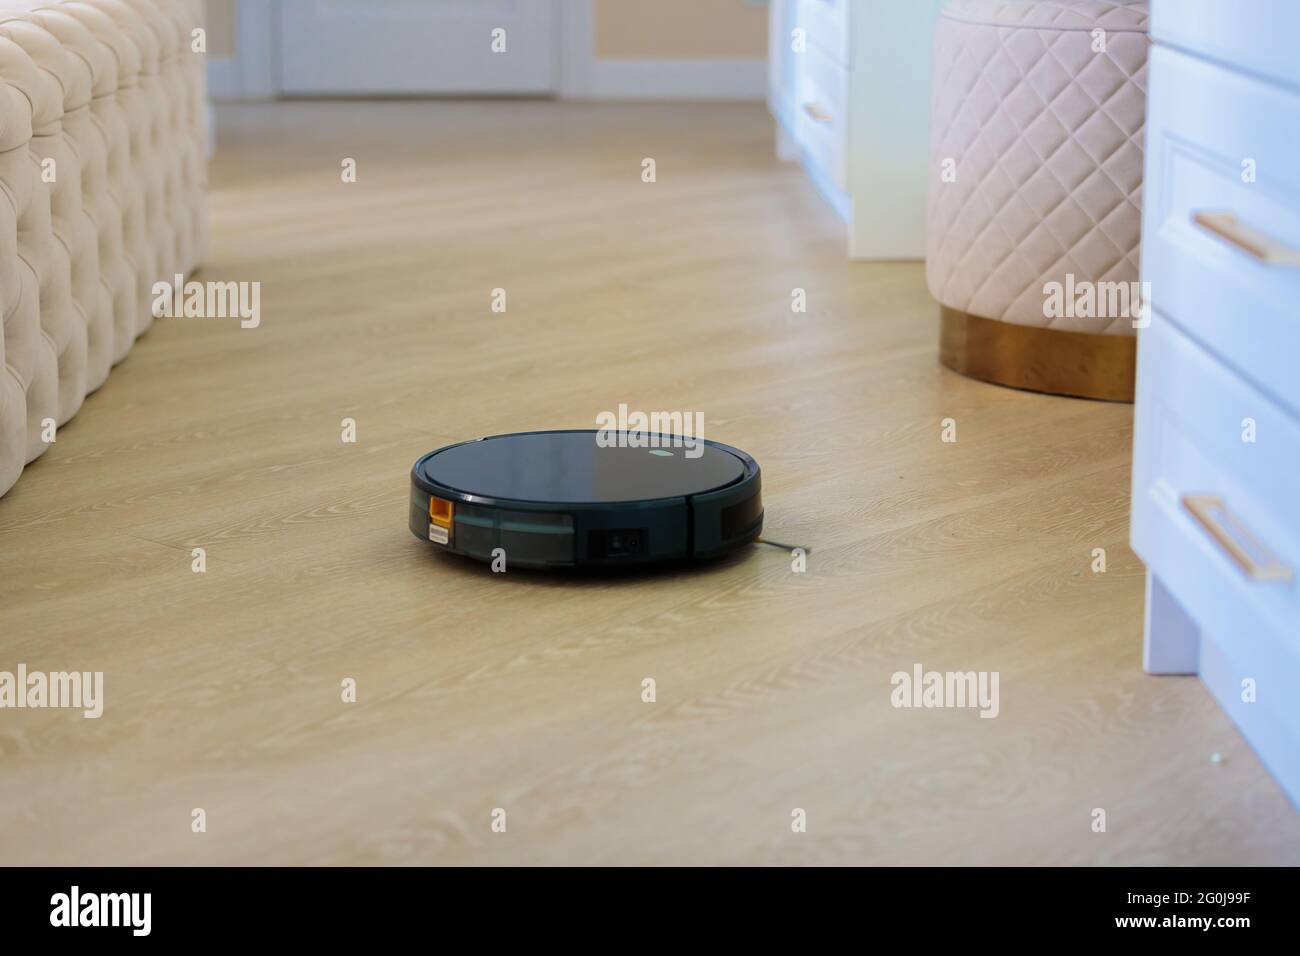 Der kreisförmige Roboter-Staubsauger sammelt Rückstände vom Boden des  Wohnzimmers. Schwarze Farbe Stockfotografie - Alamy